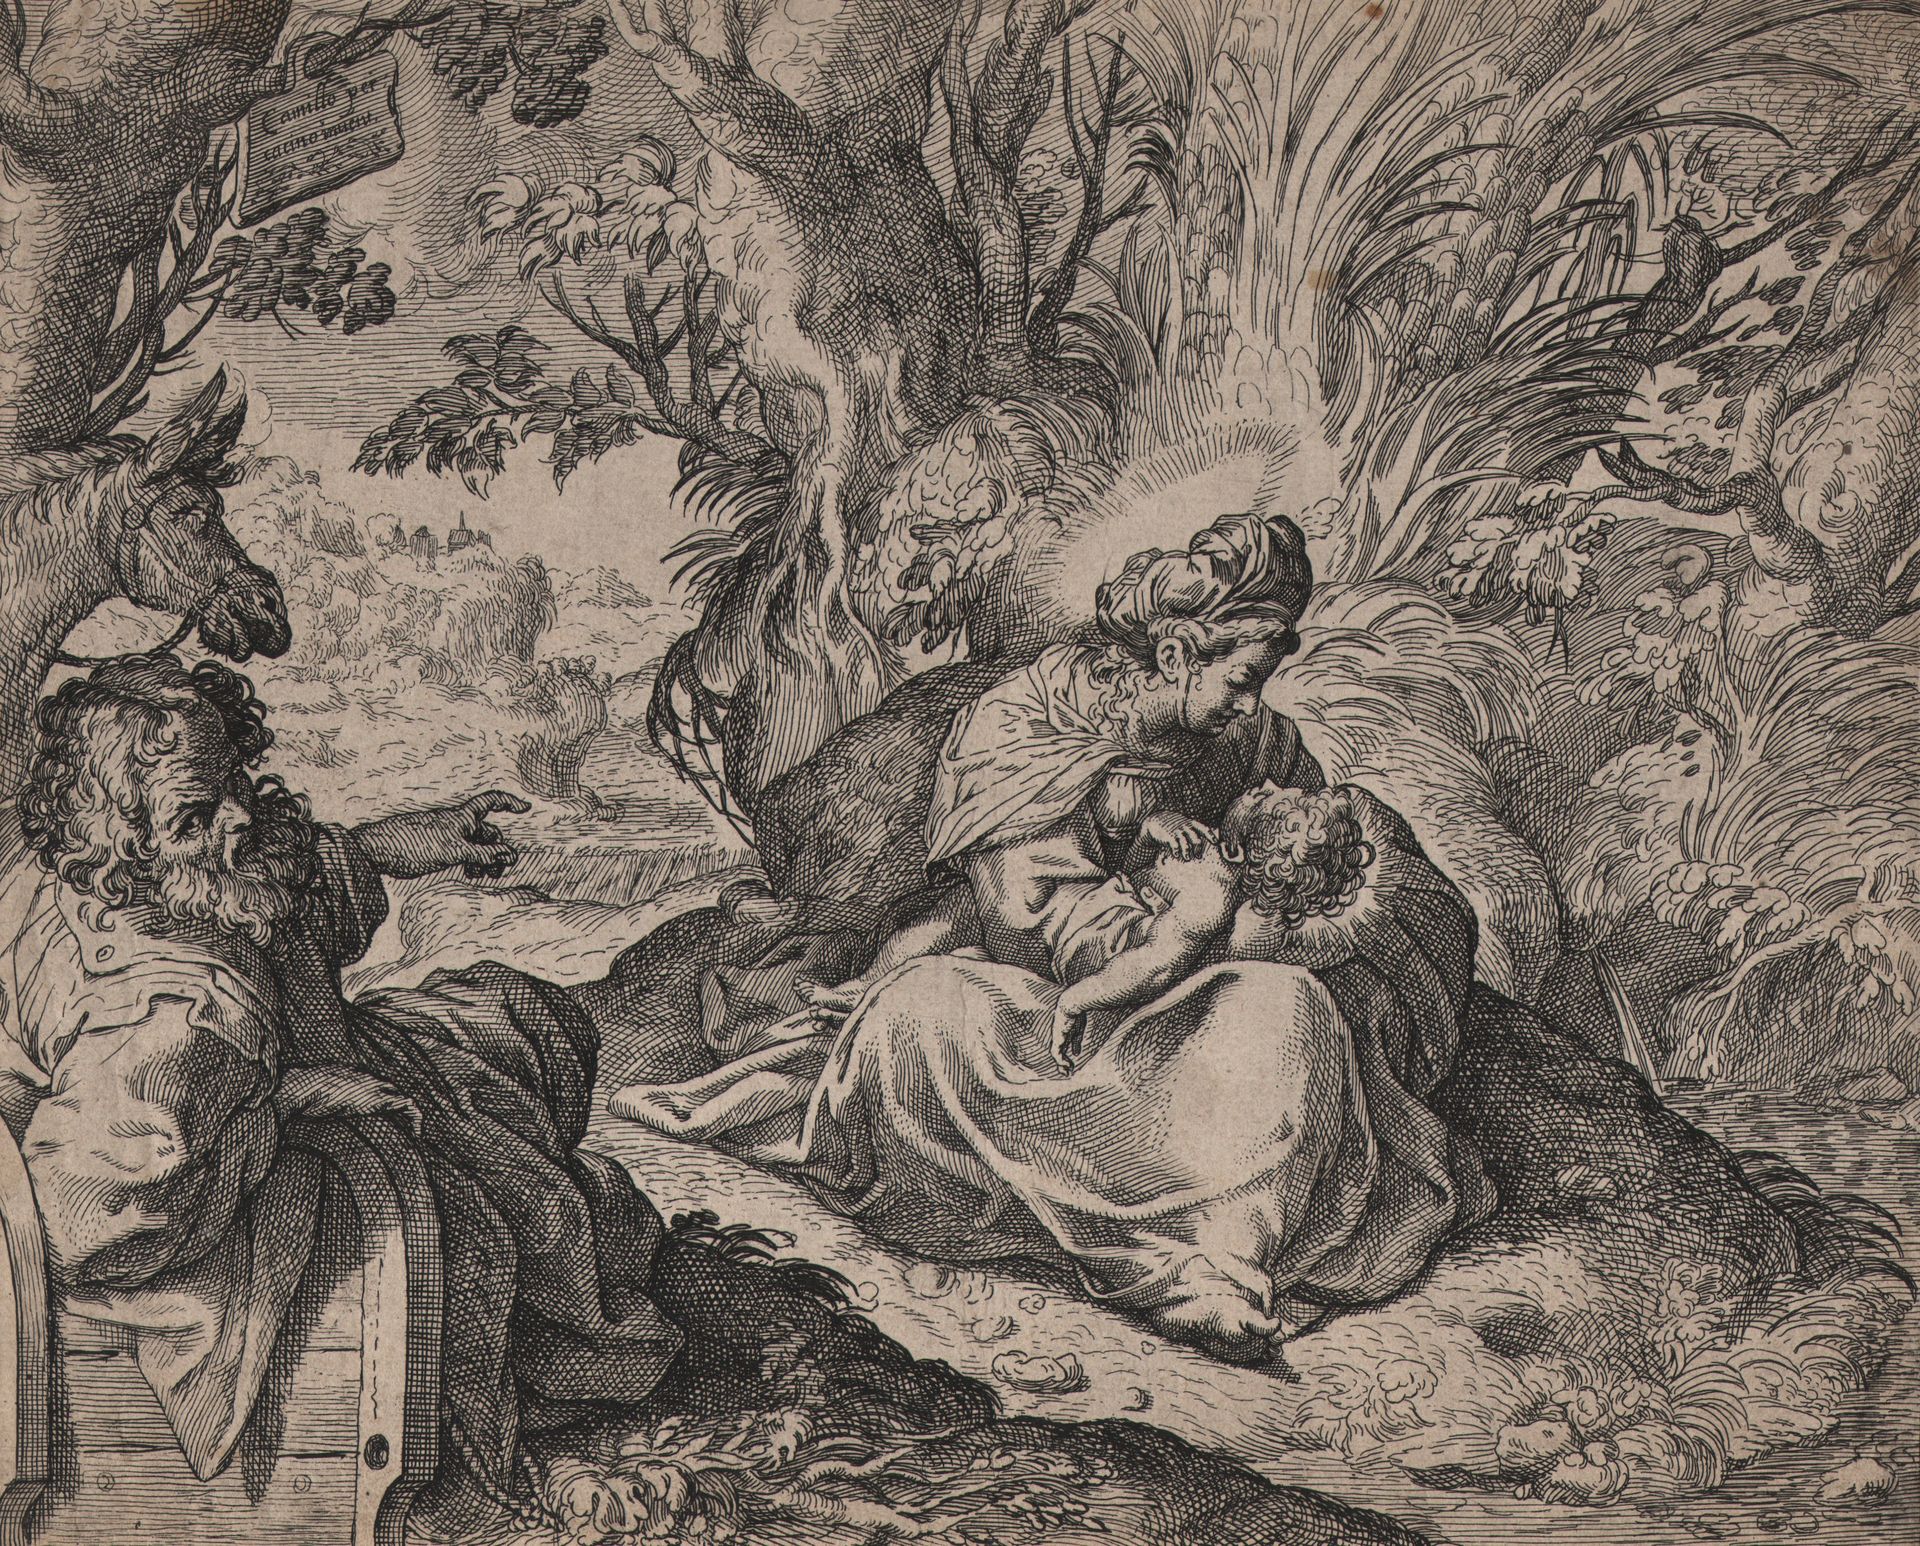 Claes Jansz. Visscher (1587-1652) Camillo Procaccini (1561-1629) nach - Die Rast&hellip;